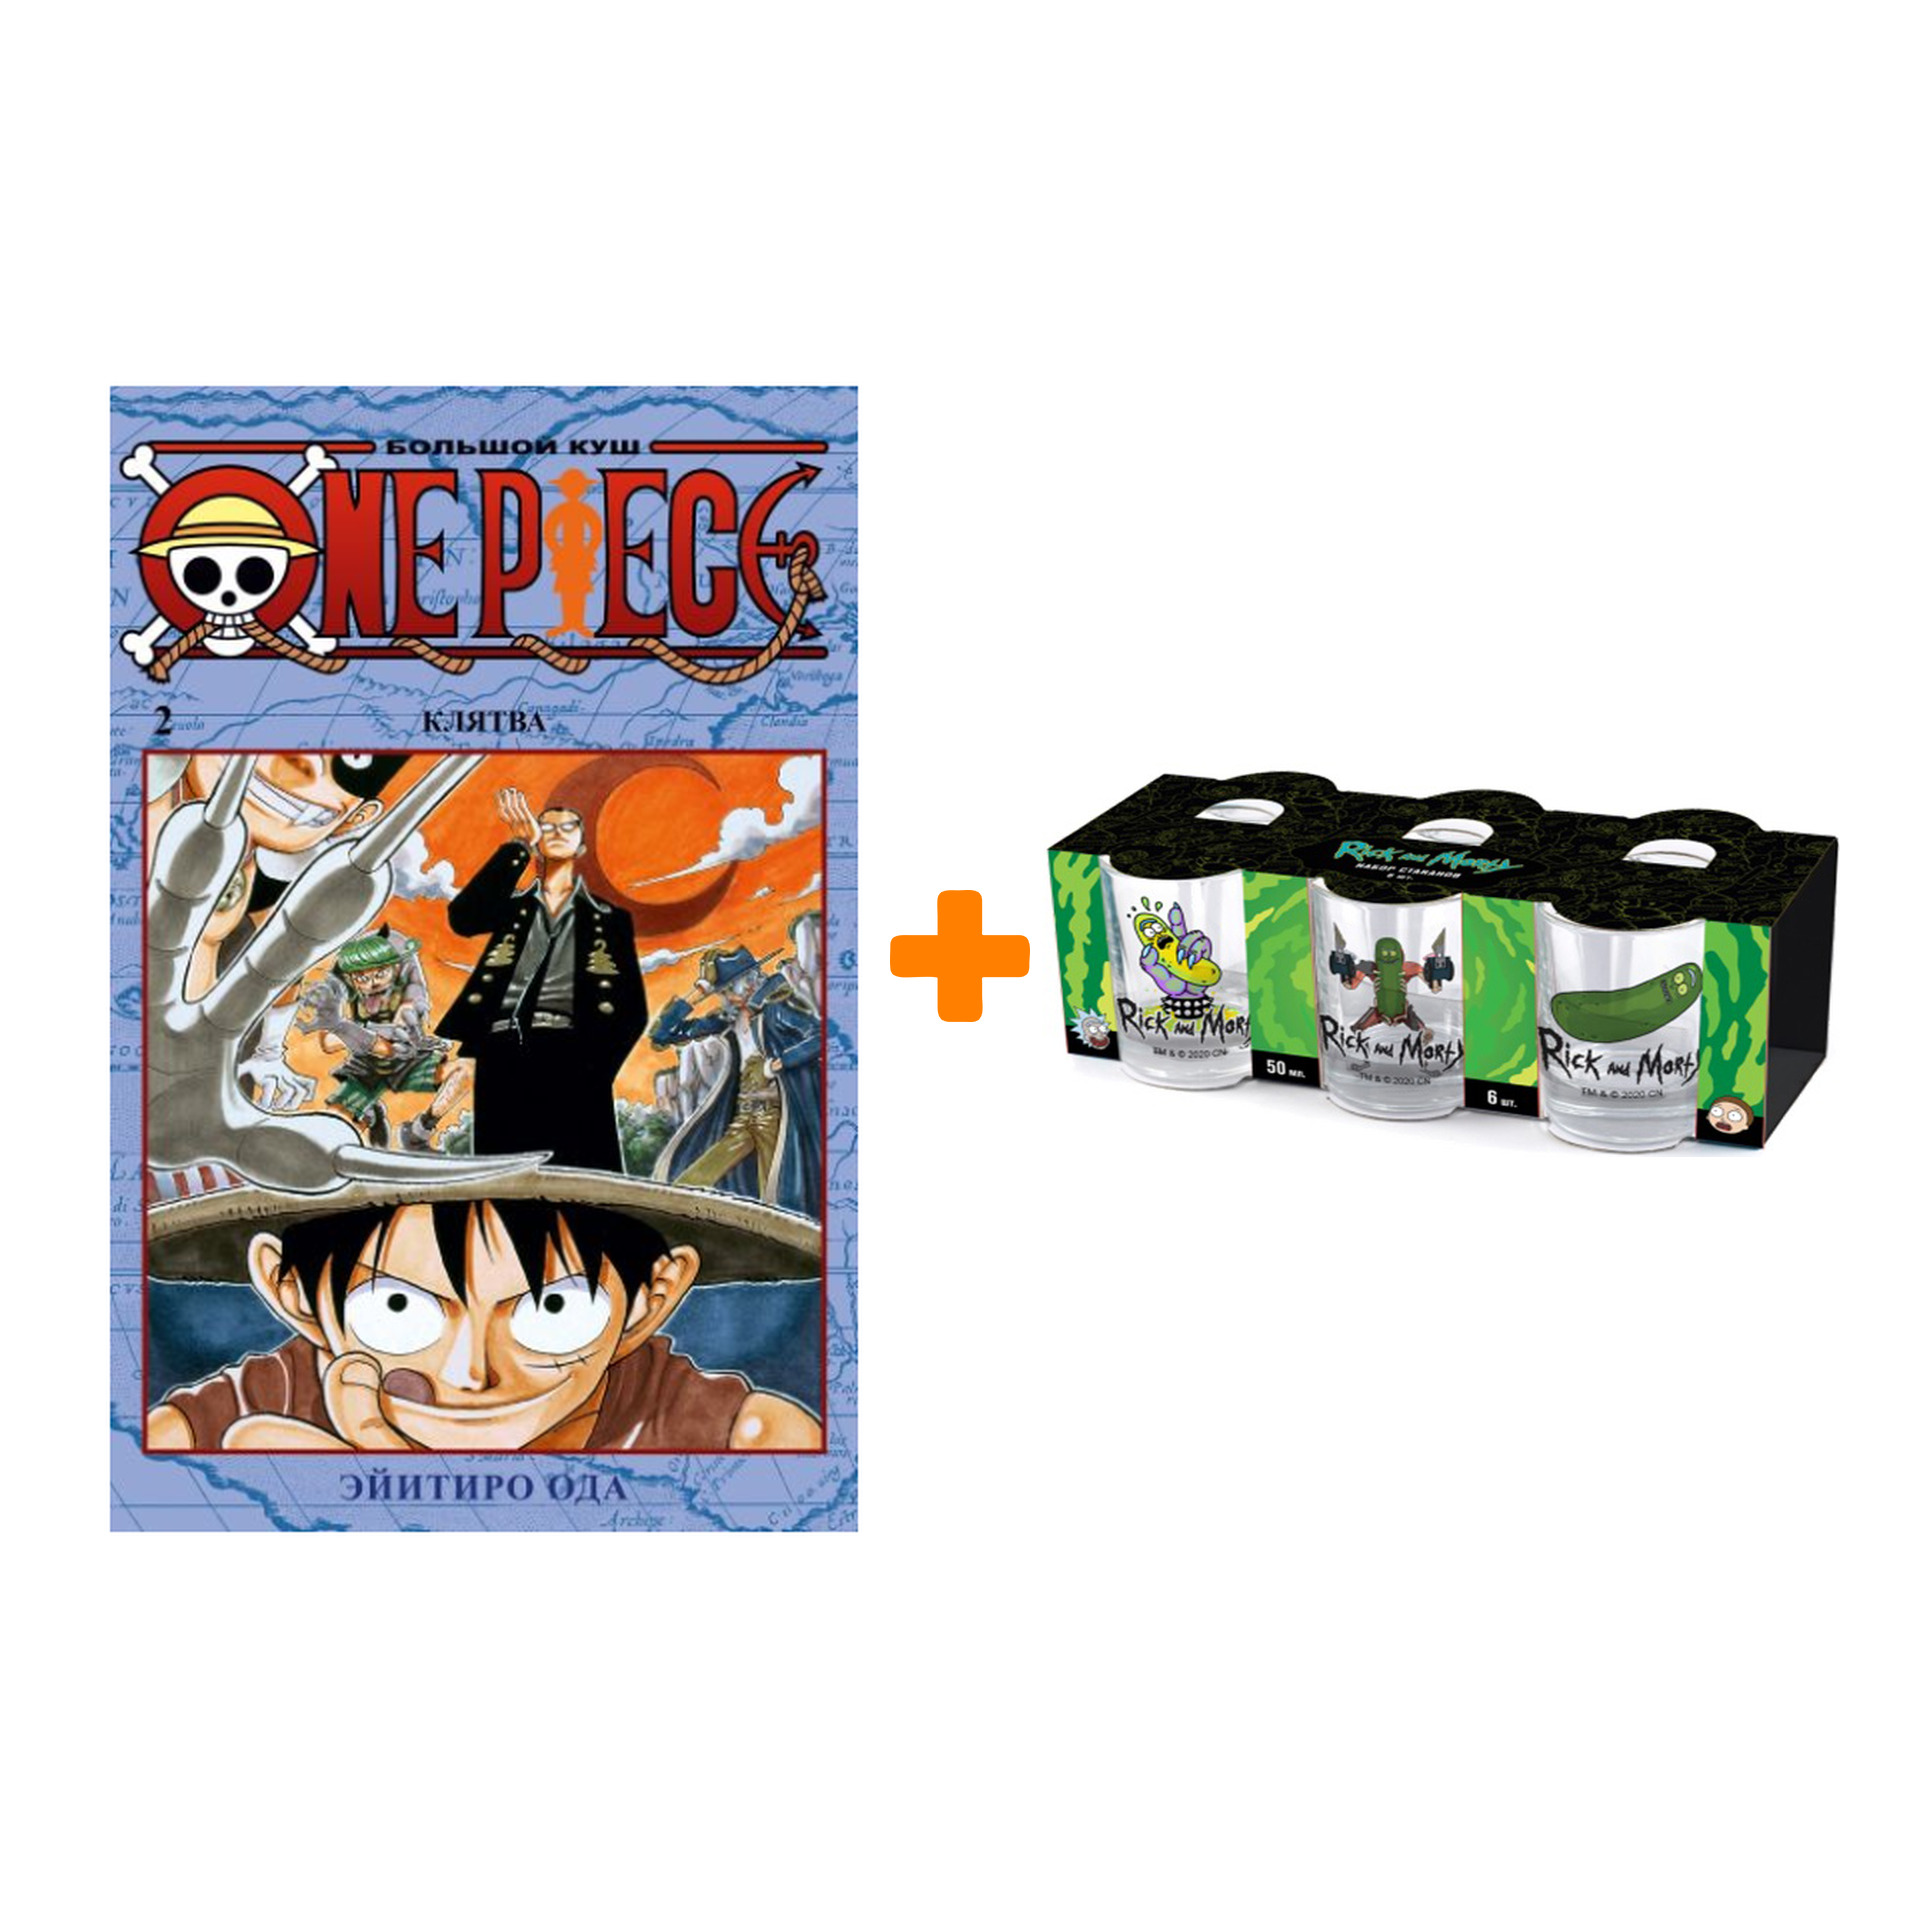 Набор Манга One Piece Большой куш Книга 2 Клятва + Набор рюмок Rick And Morty 50мл 6-Pack